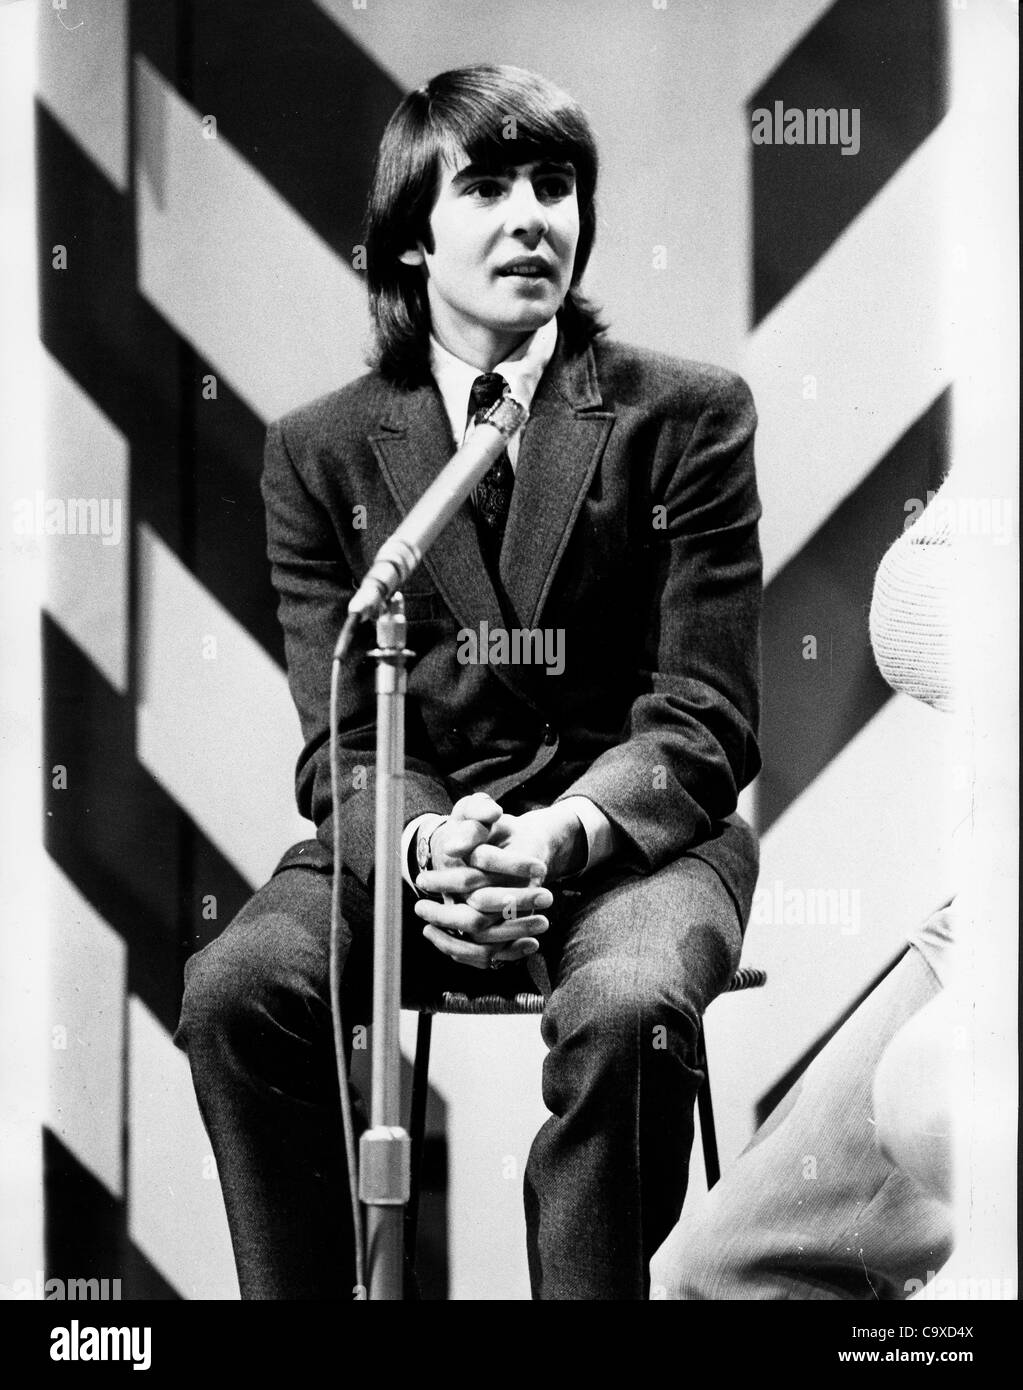 El 21 de diciembre, 1966 - Londres, Inglaterra, Reino Unido - El cantante de la banda de rock de la televisión los Monkees Davy Jones, nacido el 30 de diciembre de 1945, siendo entrevistado en la TV para 'Top of the Pops'. (Crédito de la Imagen: © KEYSTONE USA/ZUMAPRESS.com) imágenes Foto de stock